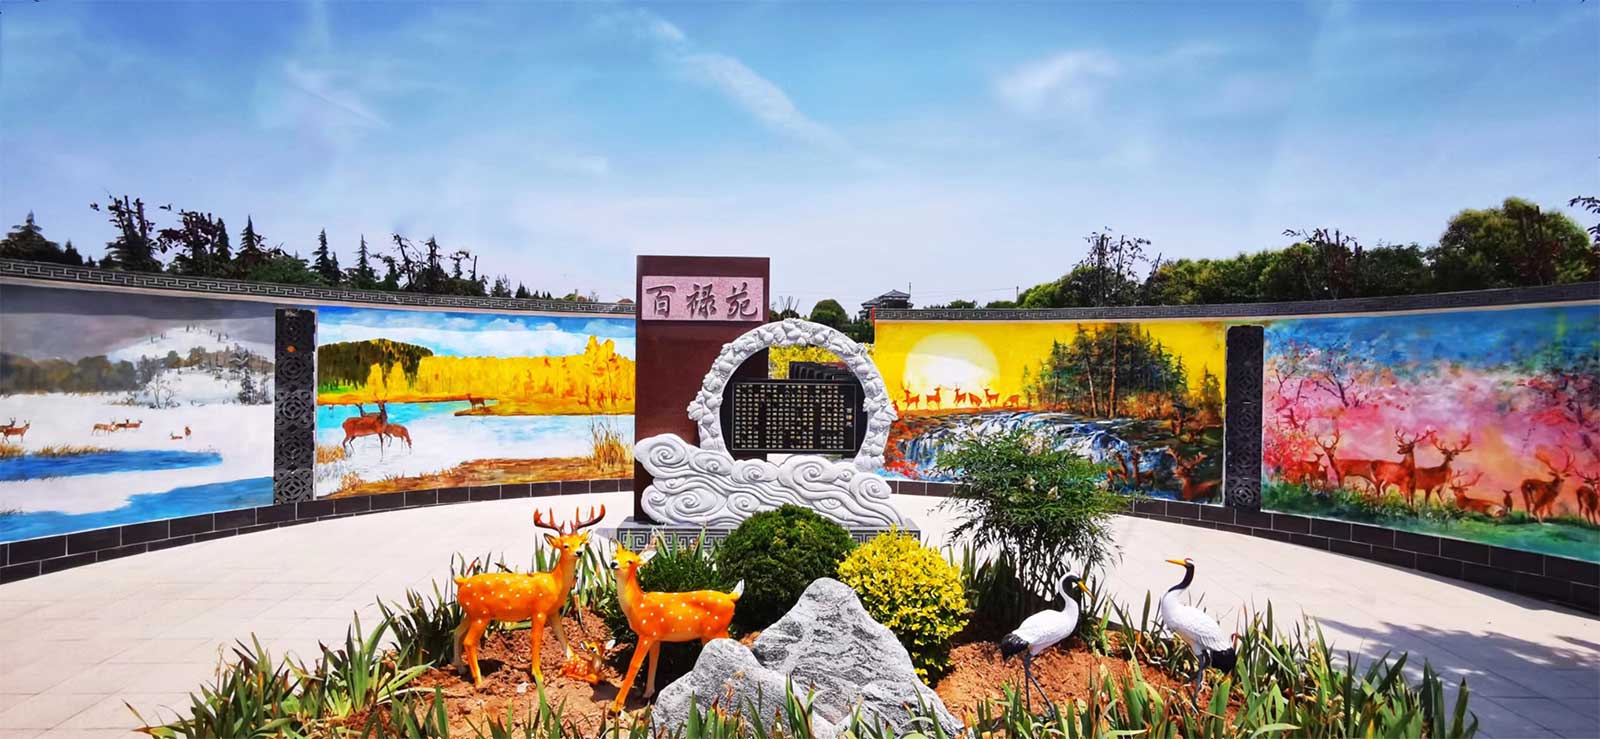 西安汉皇树葬陵园墓区图片